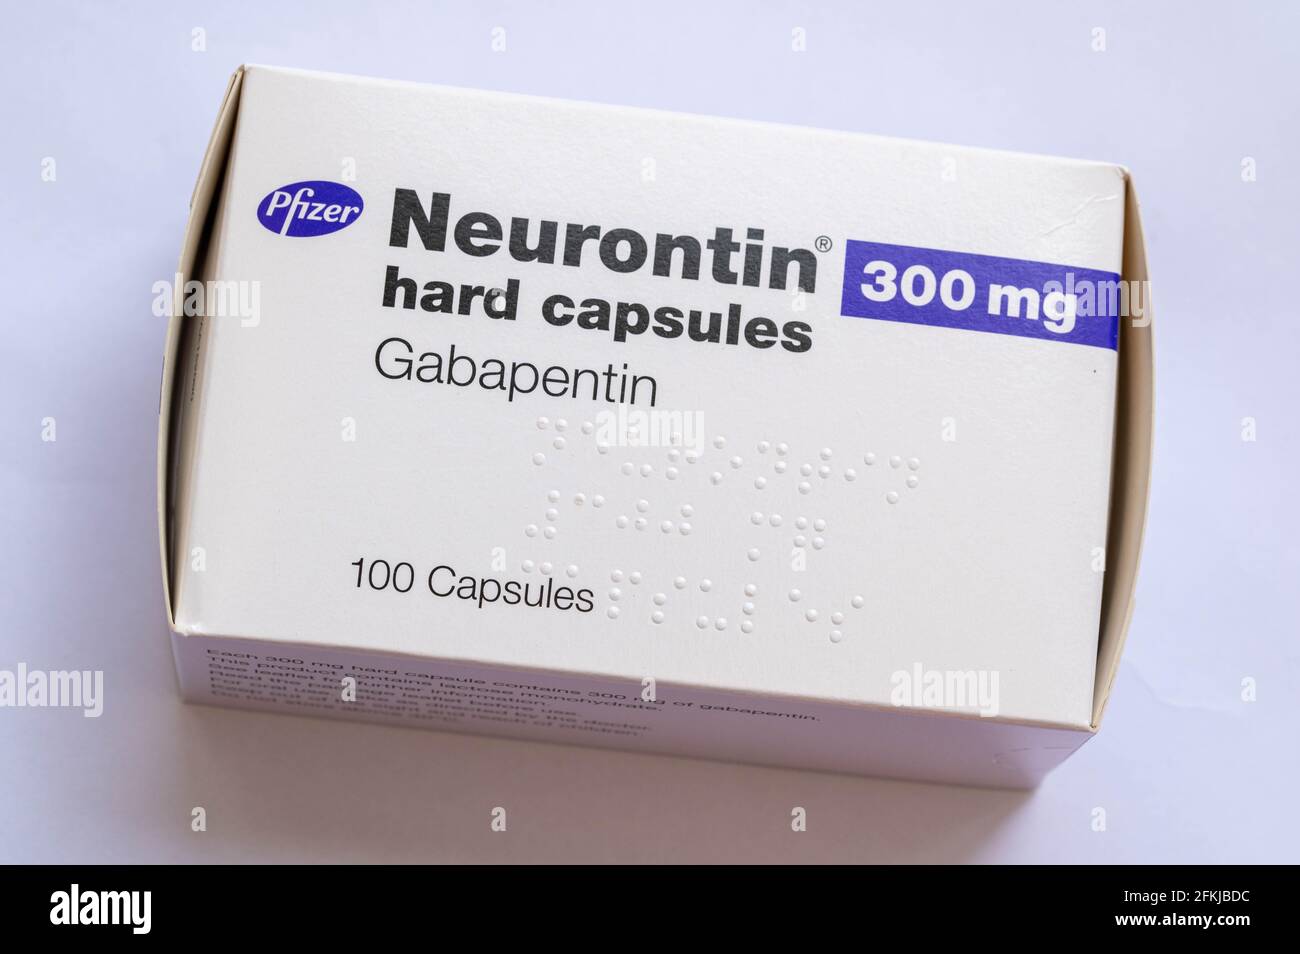 Immagine di una scatola di 300 microgrammi di compresse di Neurontin Gabapentin per il trattamento del dolore neuropatico periferico come la neuropatia diabetica dolorosa Foto Stock